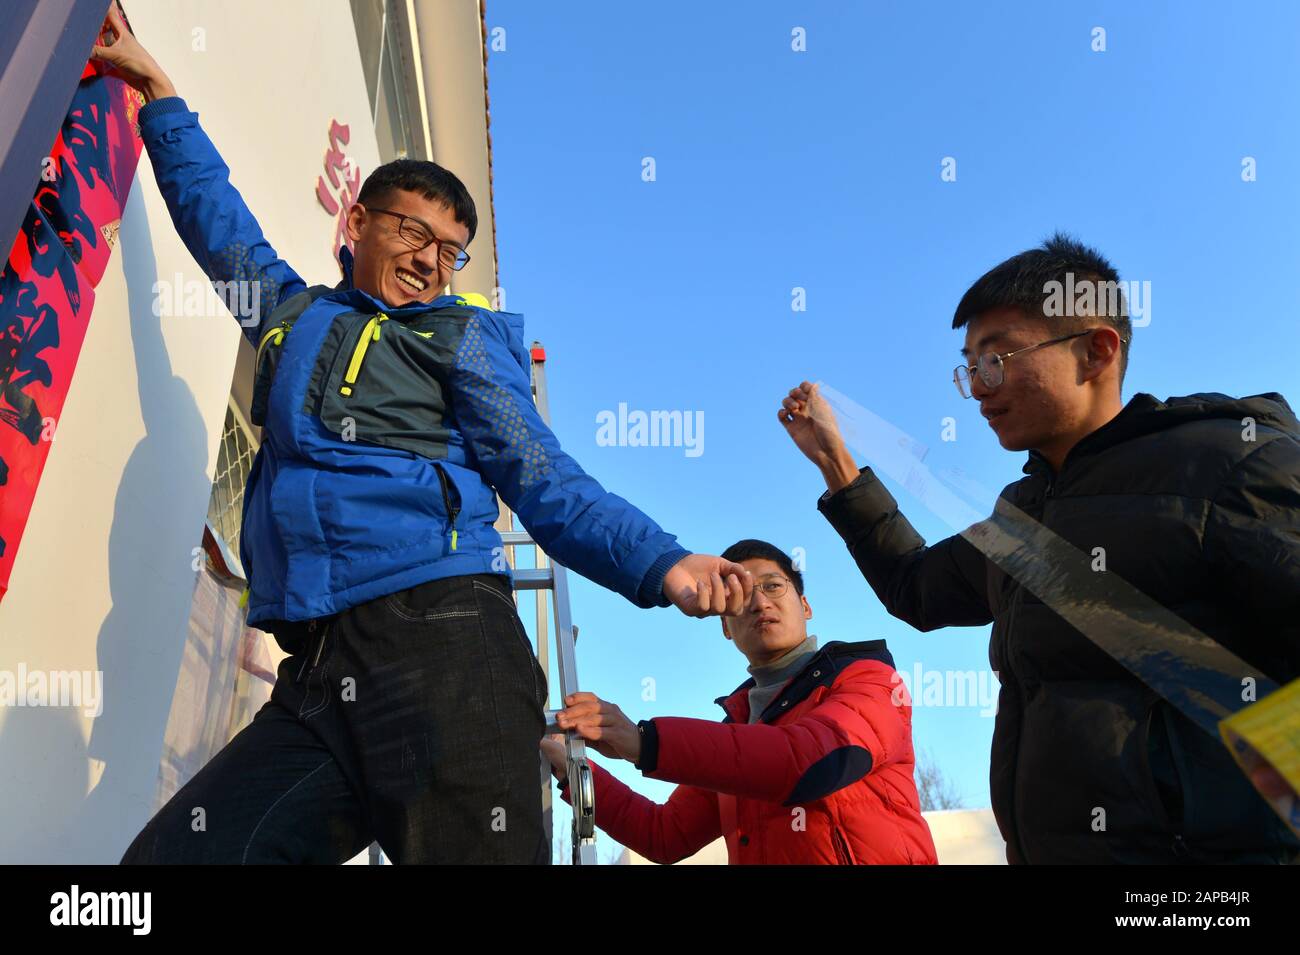 Tuoketuo, Région Autonome De La Mongolie Intérieure Chinoise. 19 janvier 2020. Les membres du personnel collent des couplets à la station hydroélectrique de Toudaoguai, dans le comté de Tuoketuo, dans la région autonome de la Mongolie intérieure du nord de la Chine, 19 janvier 2020. Bien que le fleuve jaune ait pénétré dans sa période gelée, les travailleurs hydrologiques ici sont encore restés bloqués à leurs postes. Ils commencent habituellement leur travail avant la pause de jour à une température de moins 20 degrés Celsius. Crédit: Xu Qin/Xinhua/Alay Live News Banque D'Images